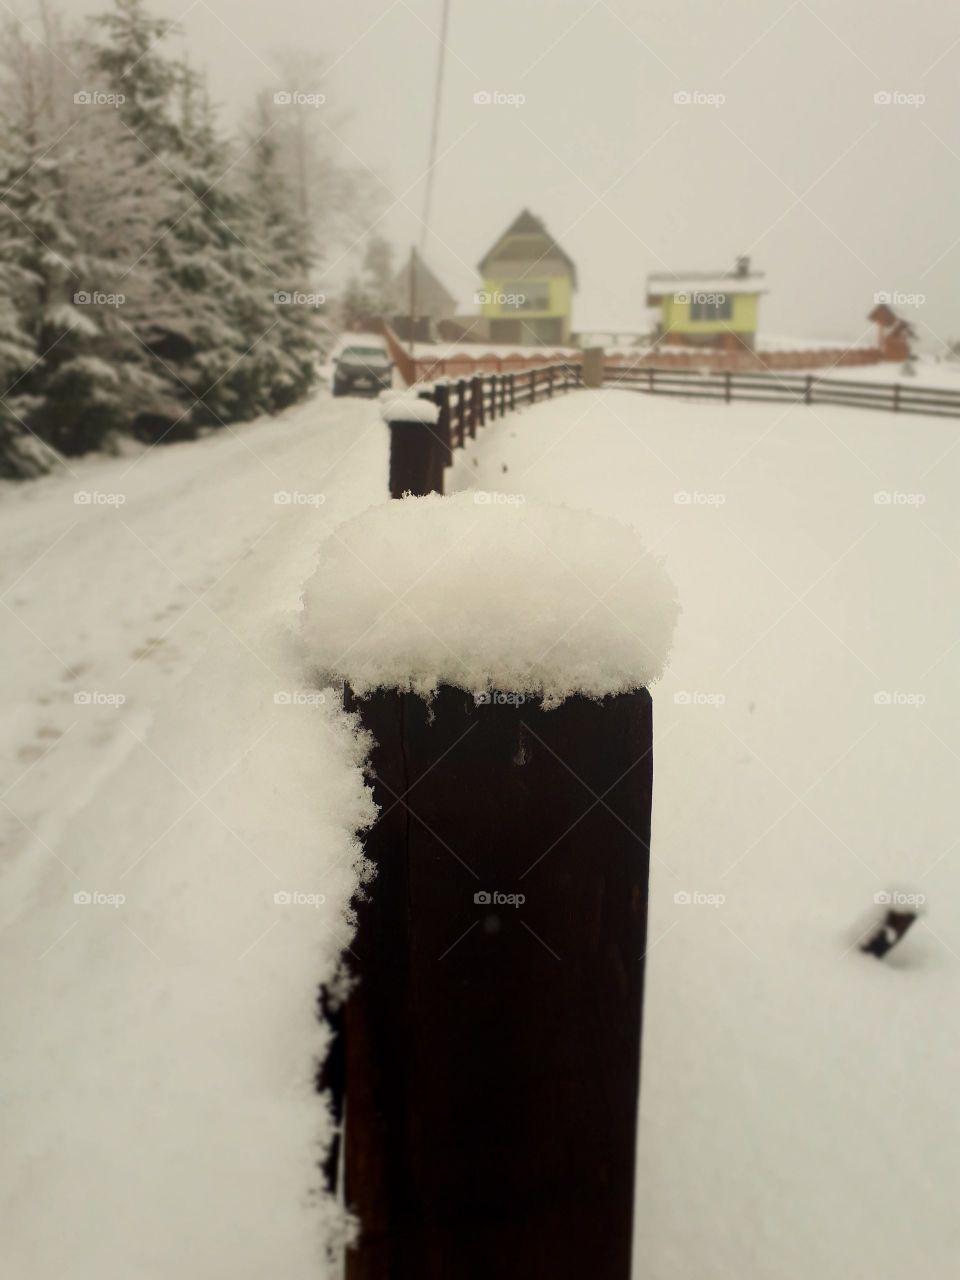 snow on the fence pillar